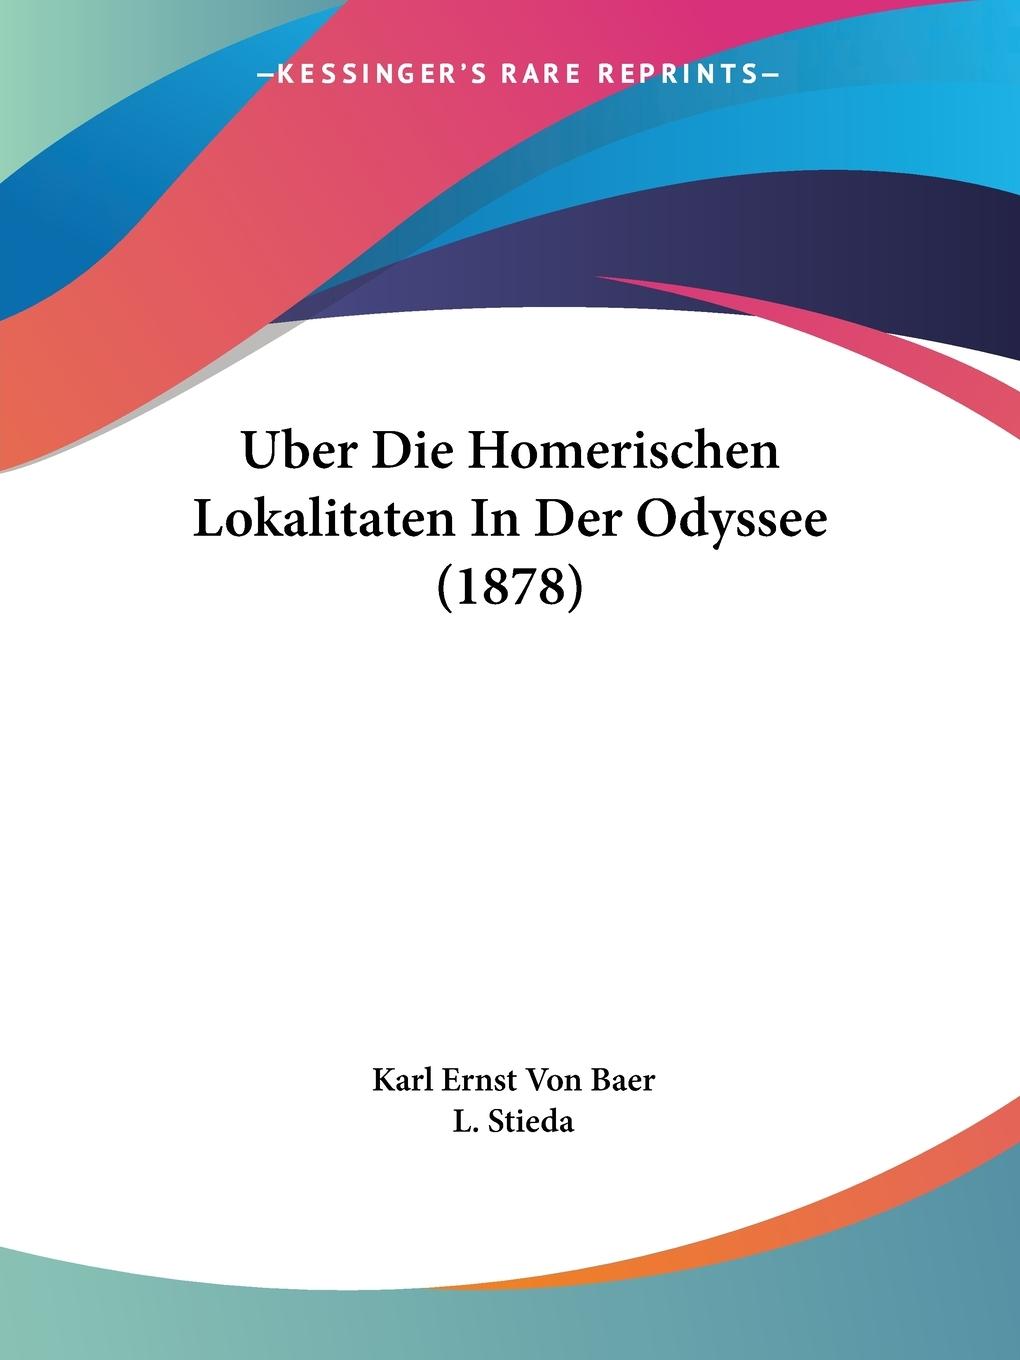 Uber Die Homerischen Lokalitaten In Der Odyssee (1878) - Baer, Karl Ernst Von